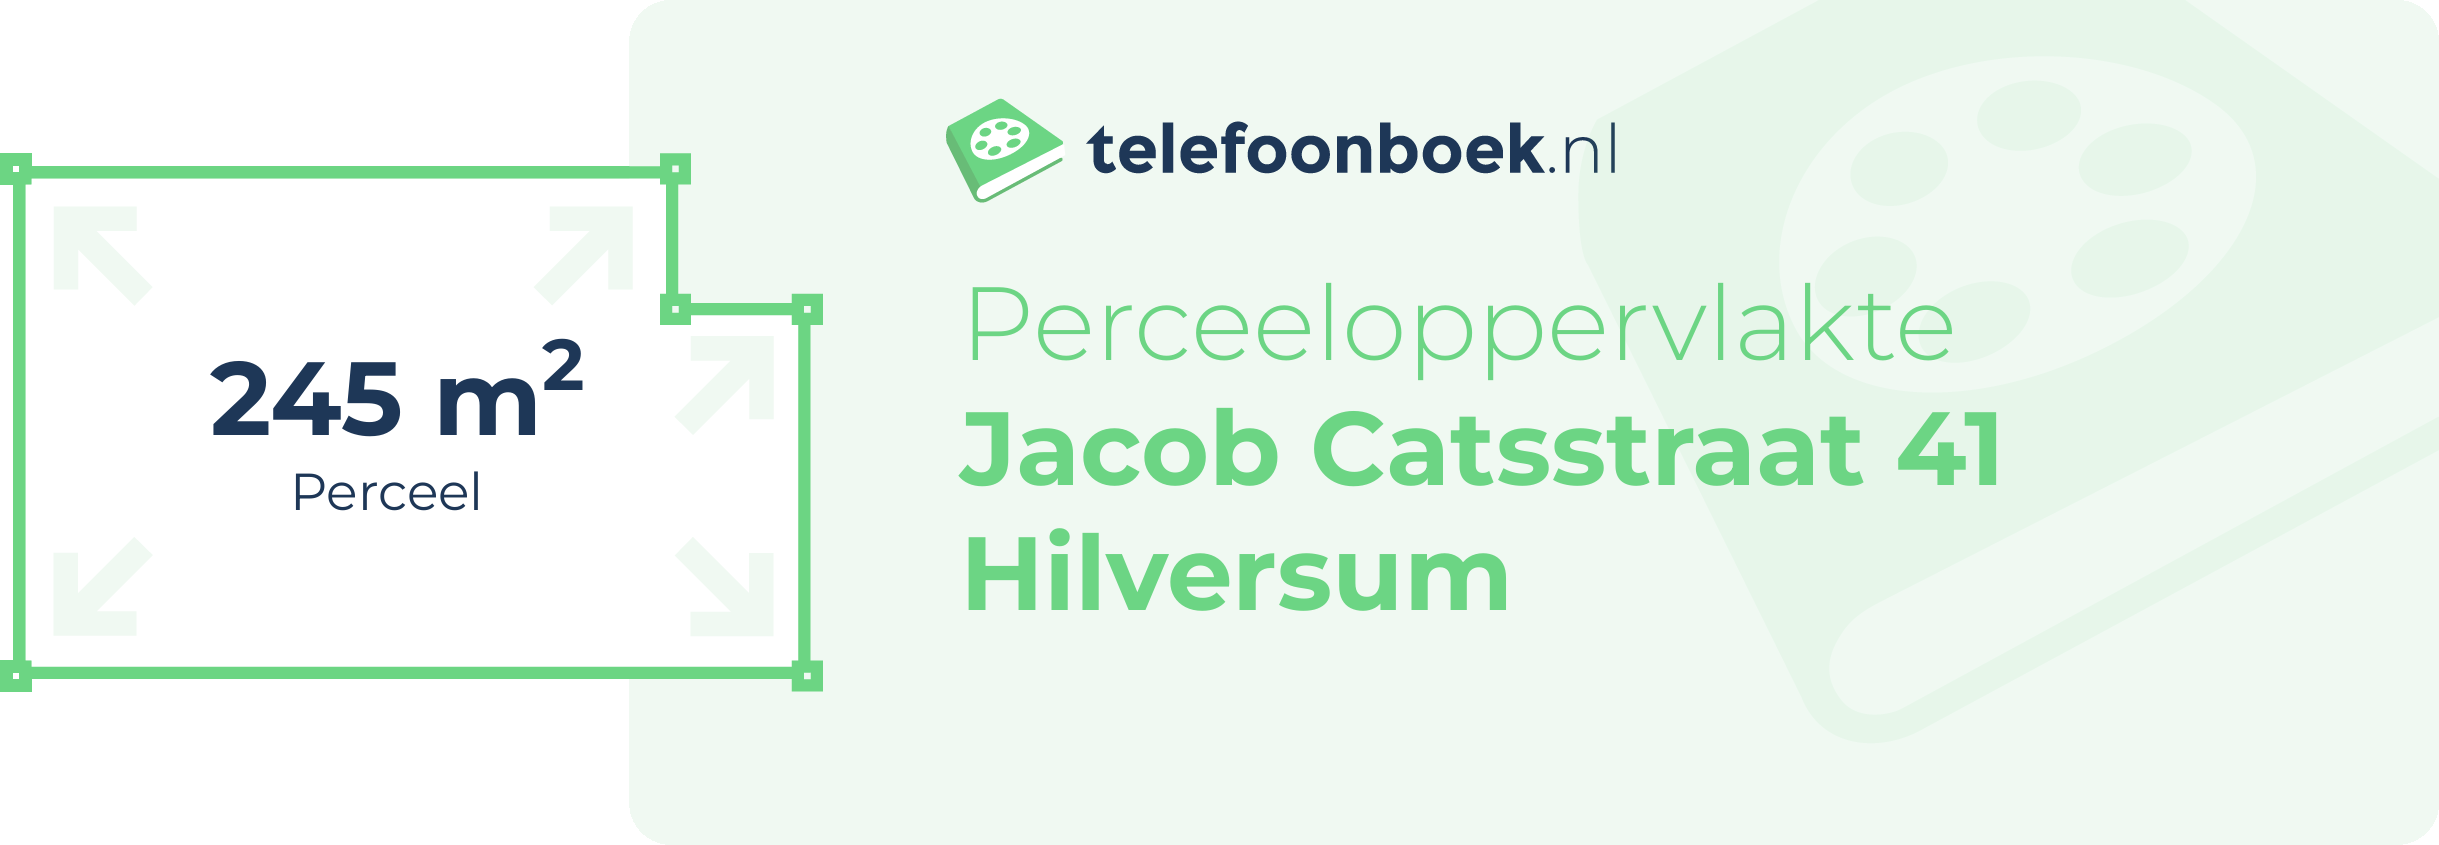 Perceeloppervlakte Jacob Catsstraat 41 Hilversum